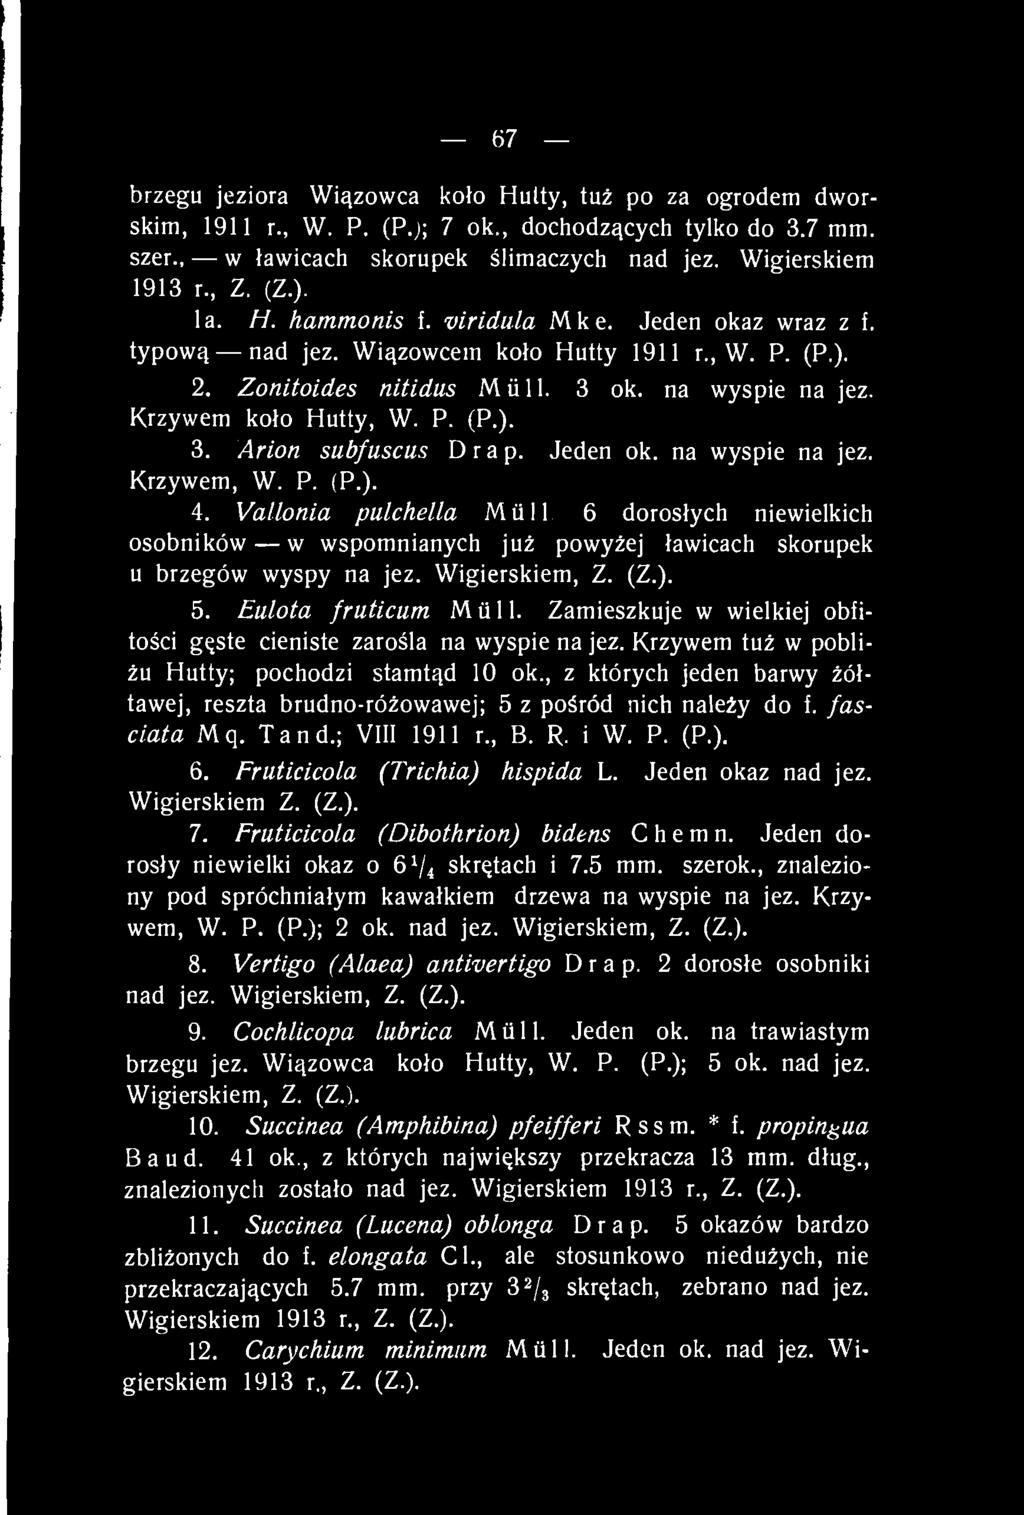 67 brzegu jeziora Wiązowca koło Hutty, tuż po za ogrodem dworskim, 1911 r., W. P. (P.); 7 ok., dochodzących tylko do 3.7 mm. szer., w ławicach skorupek ślimaczych nad jez. Wigierskiem 1913 r., Z. (Z.